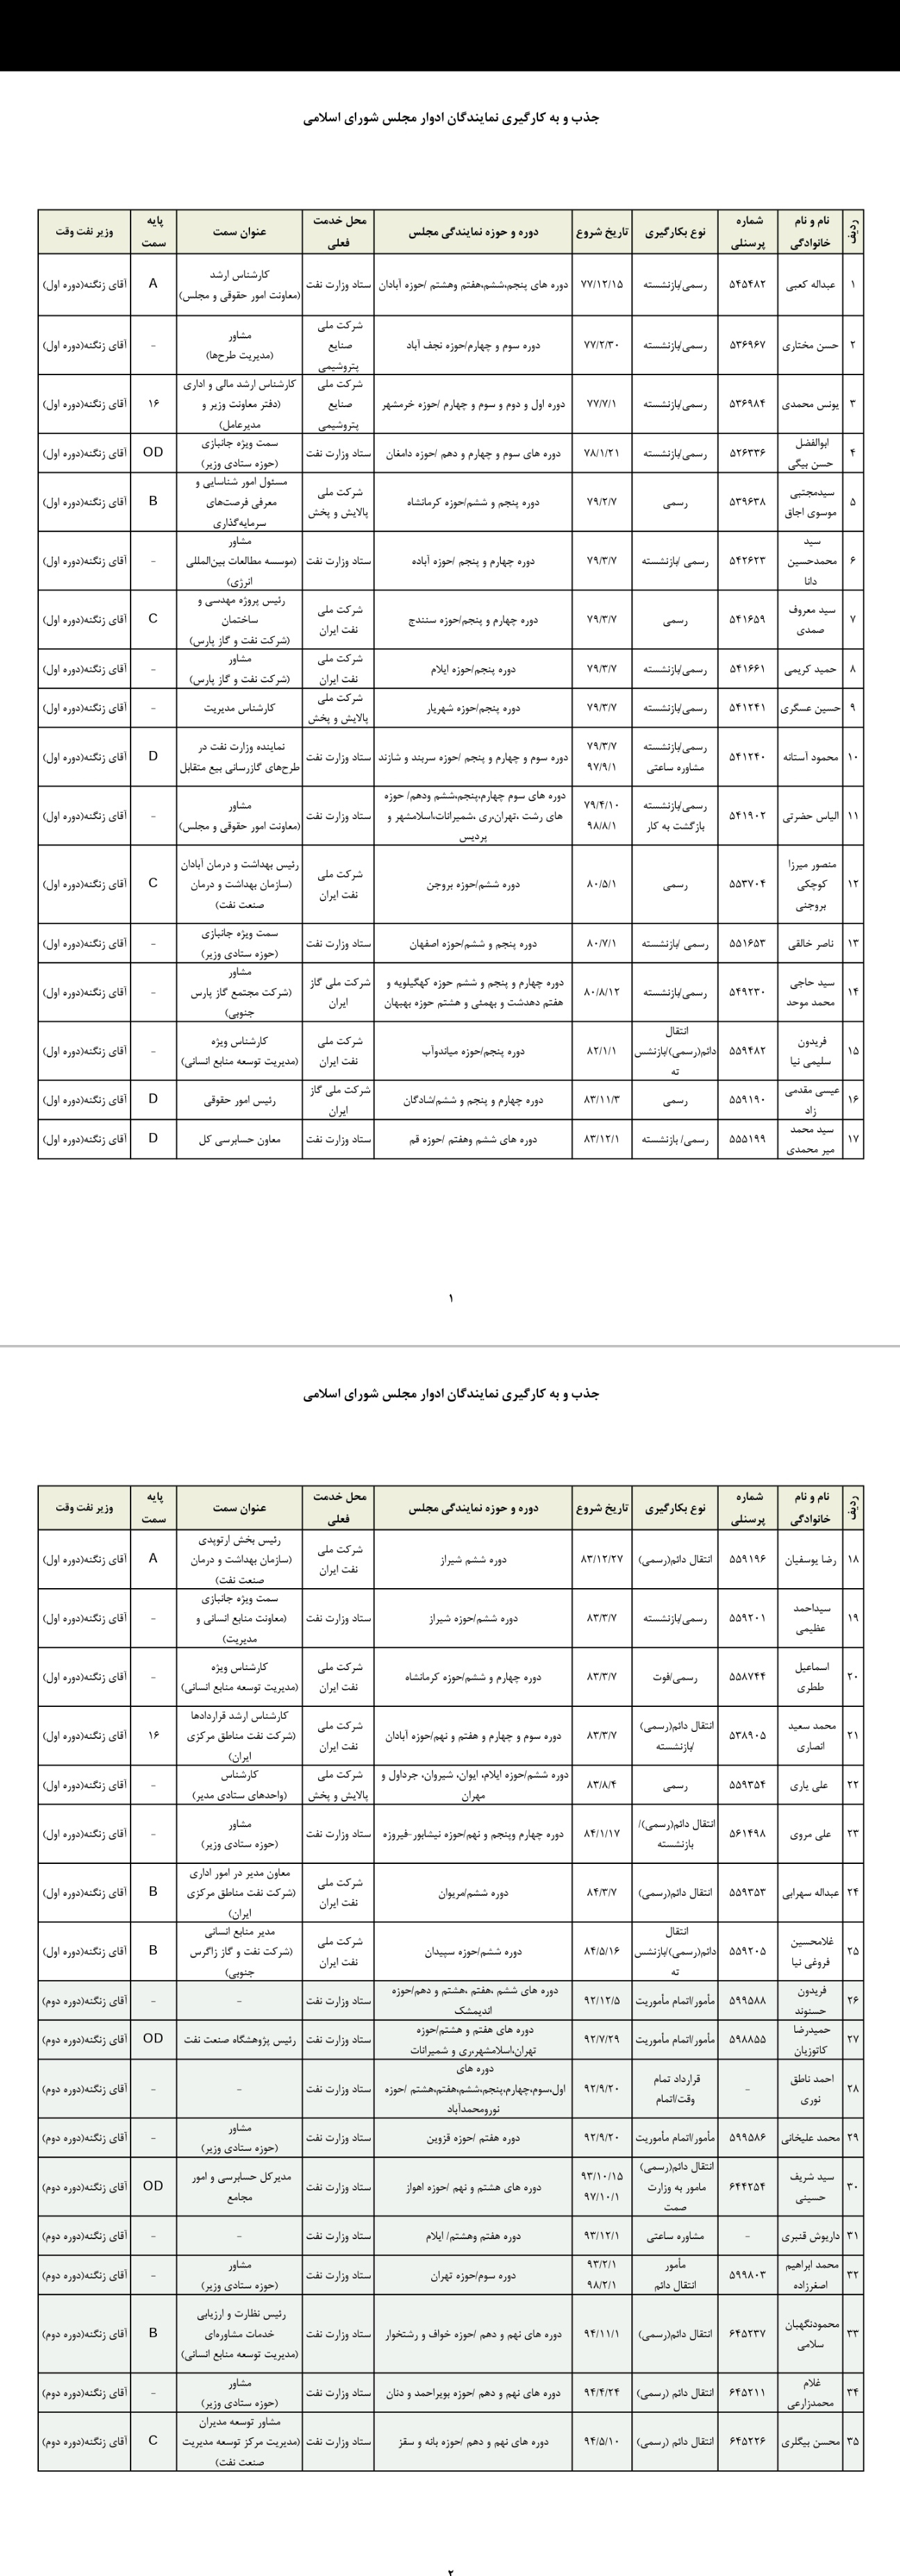 اسامی تعدادی از نمایندگان مجلس که با دستور زنگنه به استخدام وزارت نفت درآمدند یا به این وزارتخانه منتقل شدند